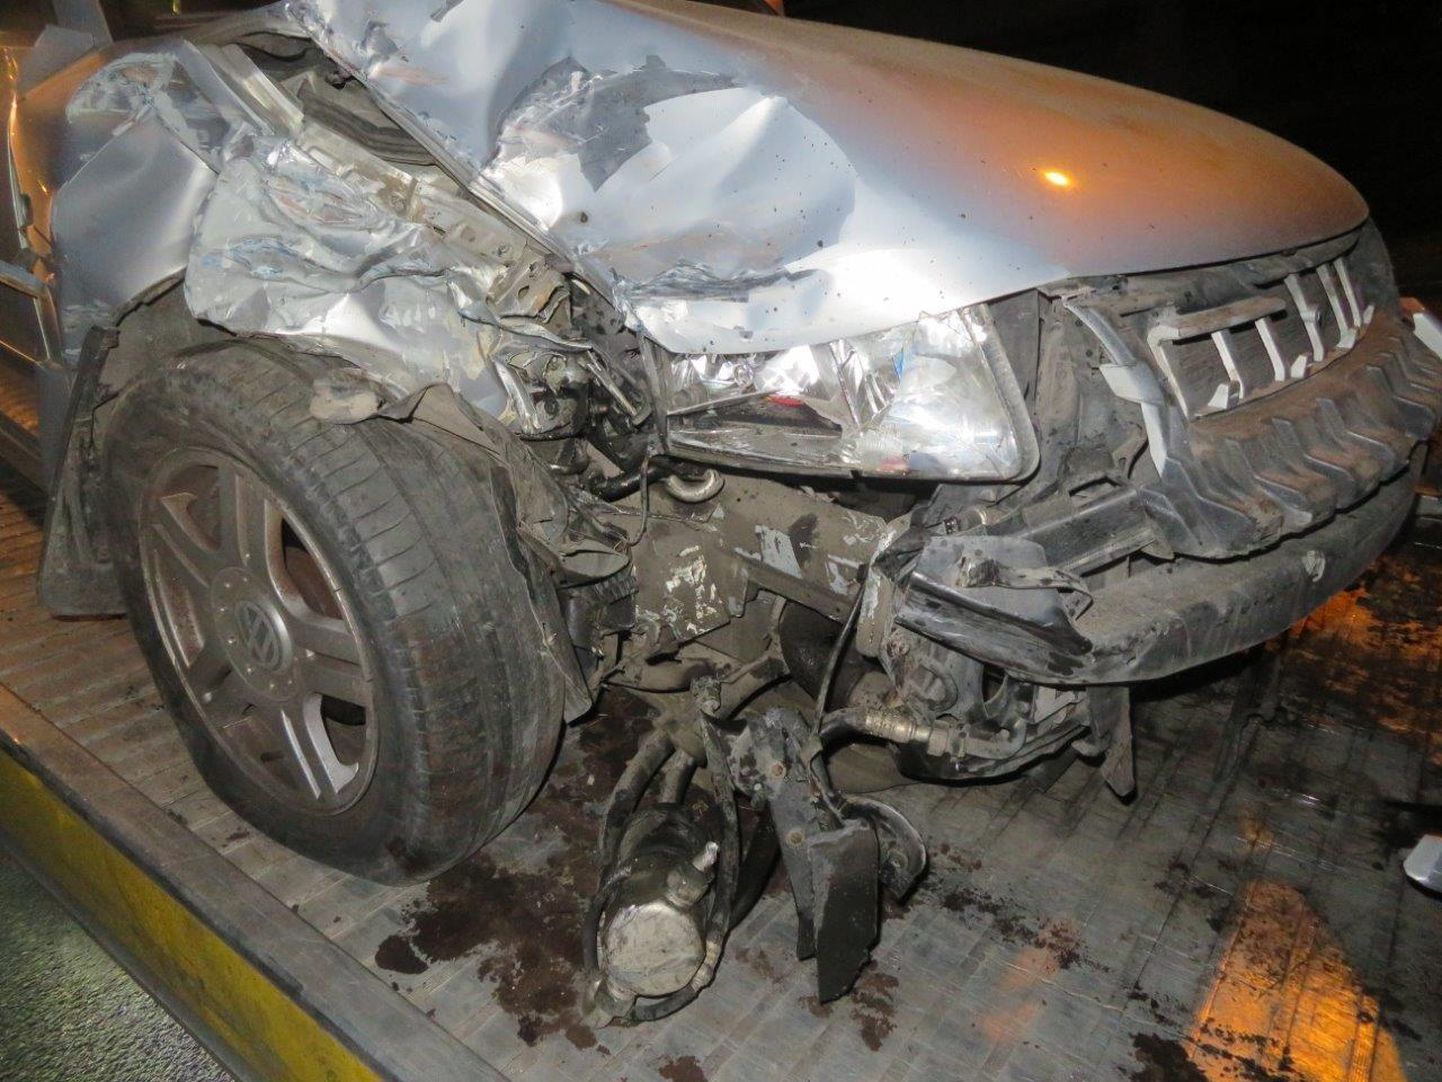 Kokkupõrke algatanud auto sai õnnetuses päris palju kannatada.